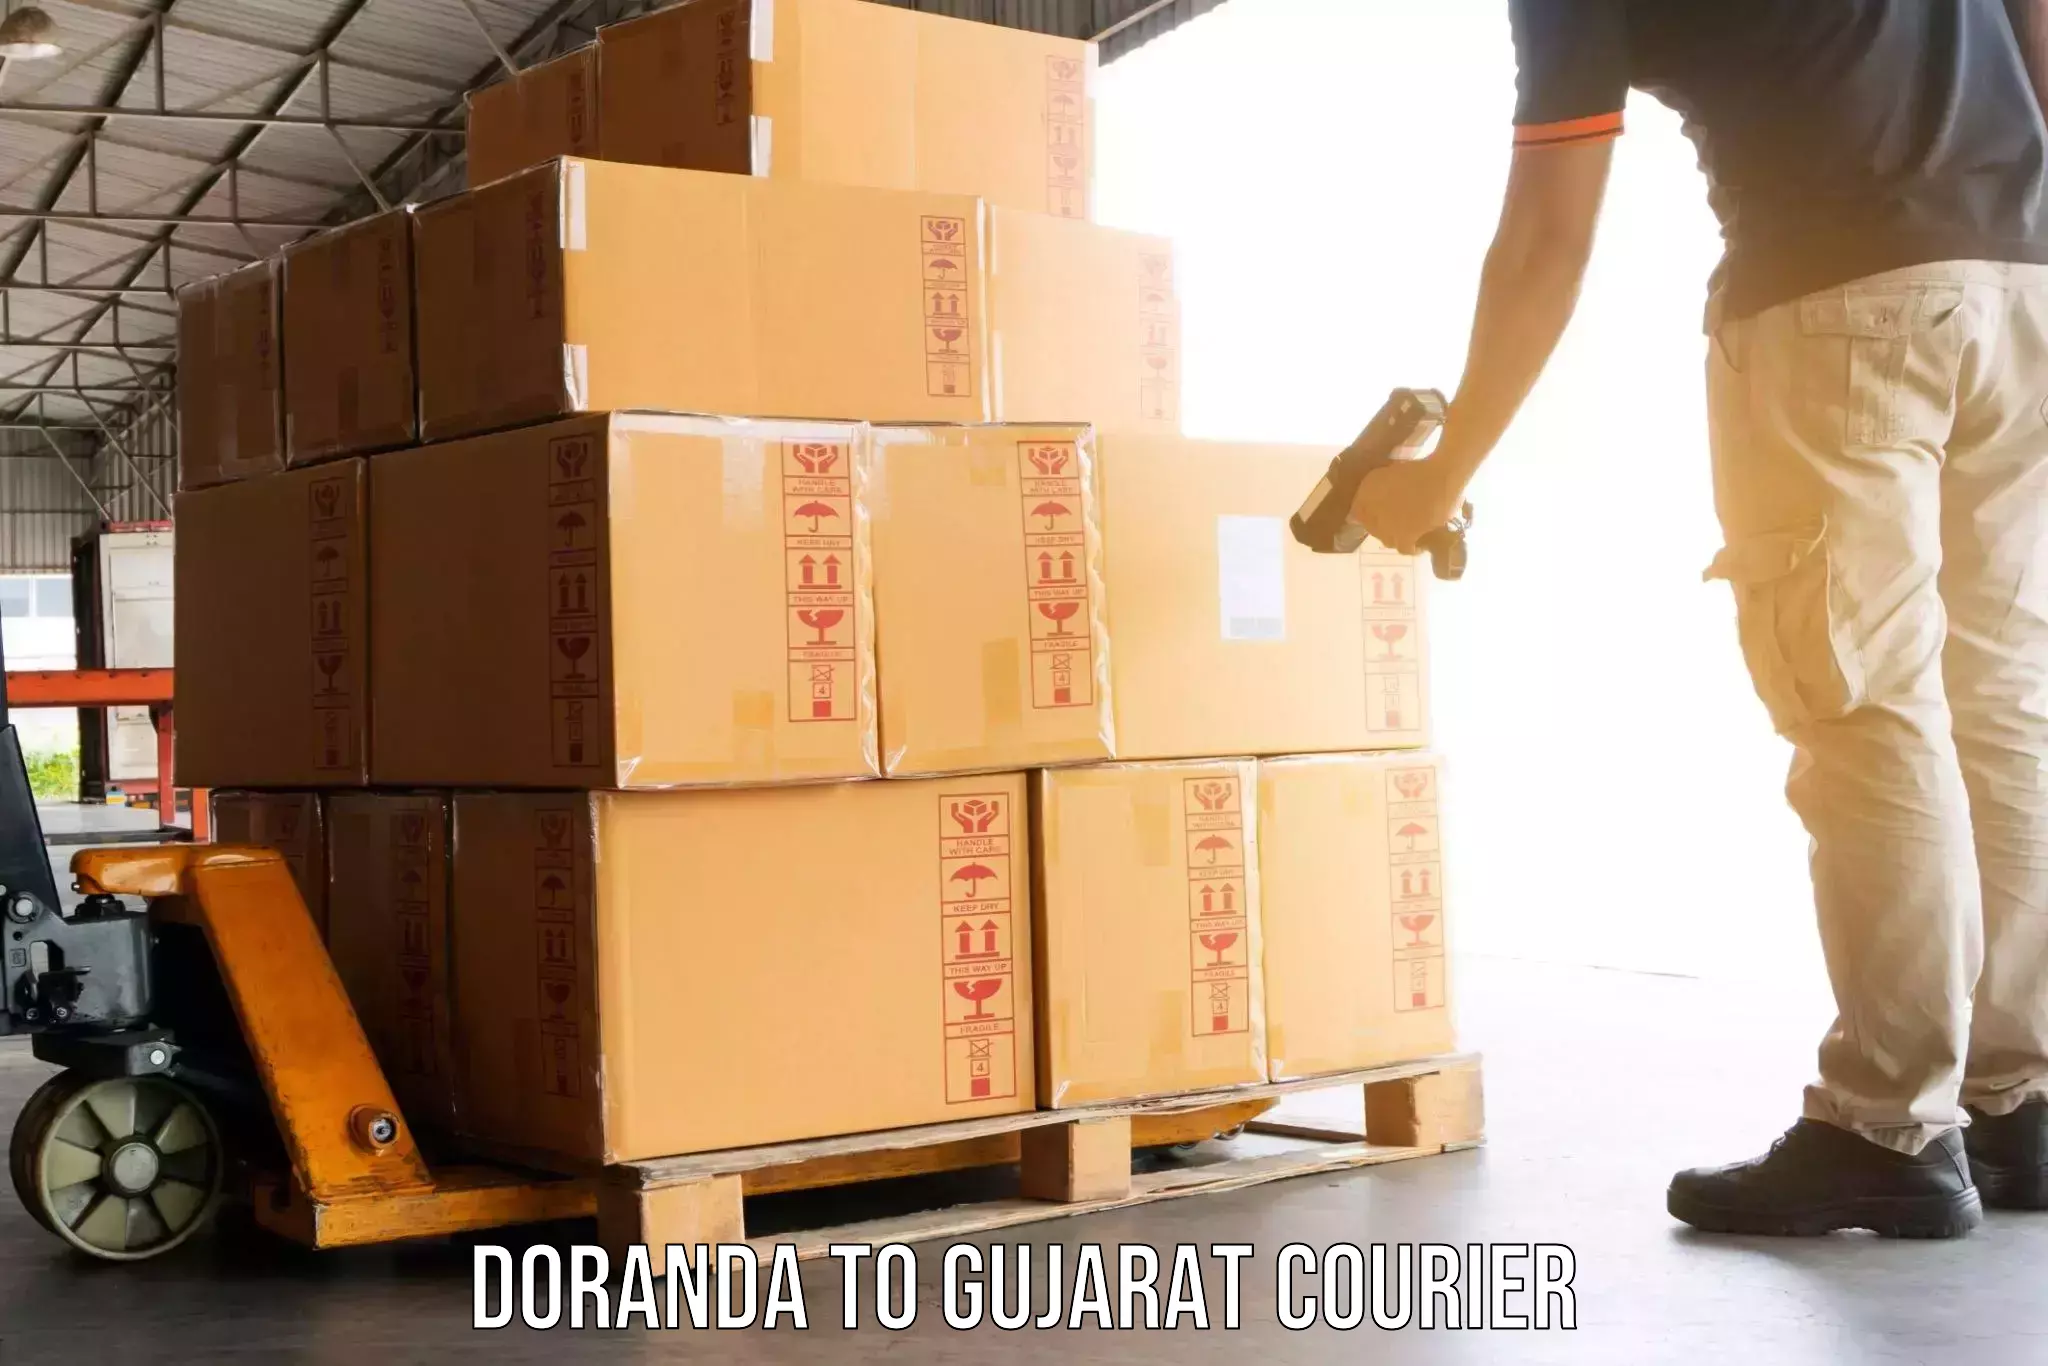 Furniture delivery service Doranda to Karjan